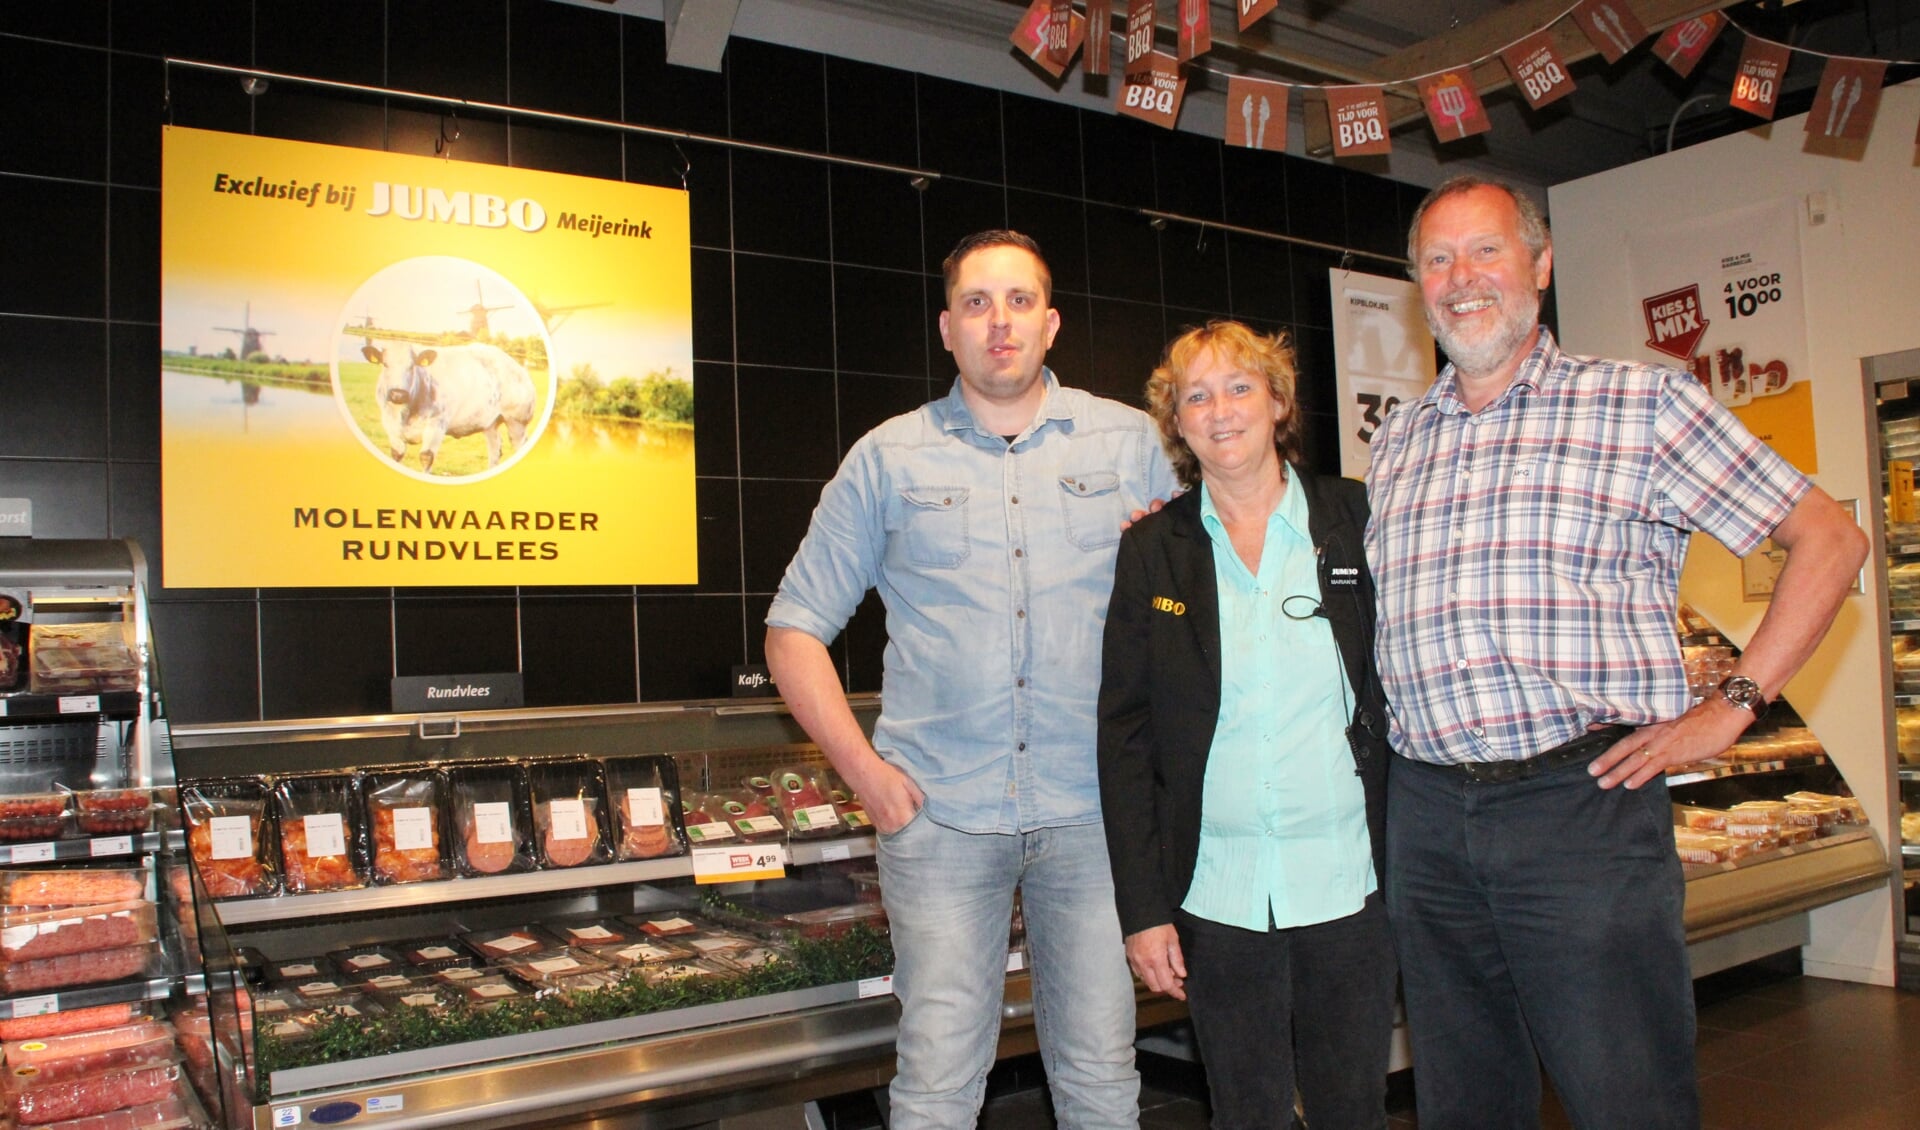 • Wim bij de Vaate en Marianne en Daan Meijerink bij de schappen van het Molenwaarder rundvlees. 